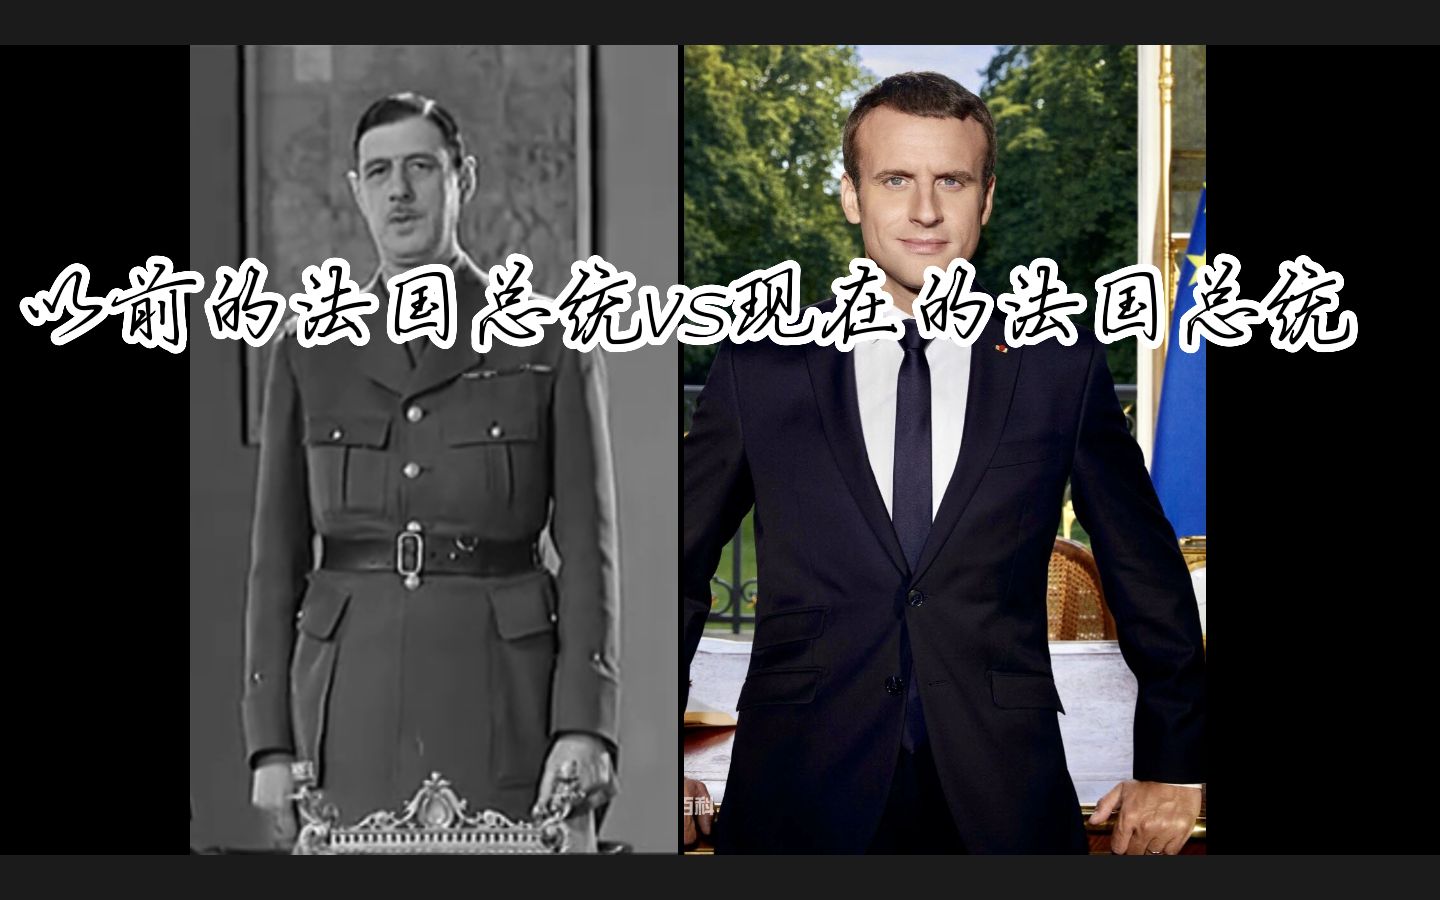 以前的法国总统vs现在的法国总统